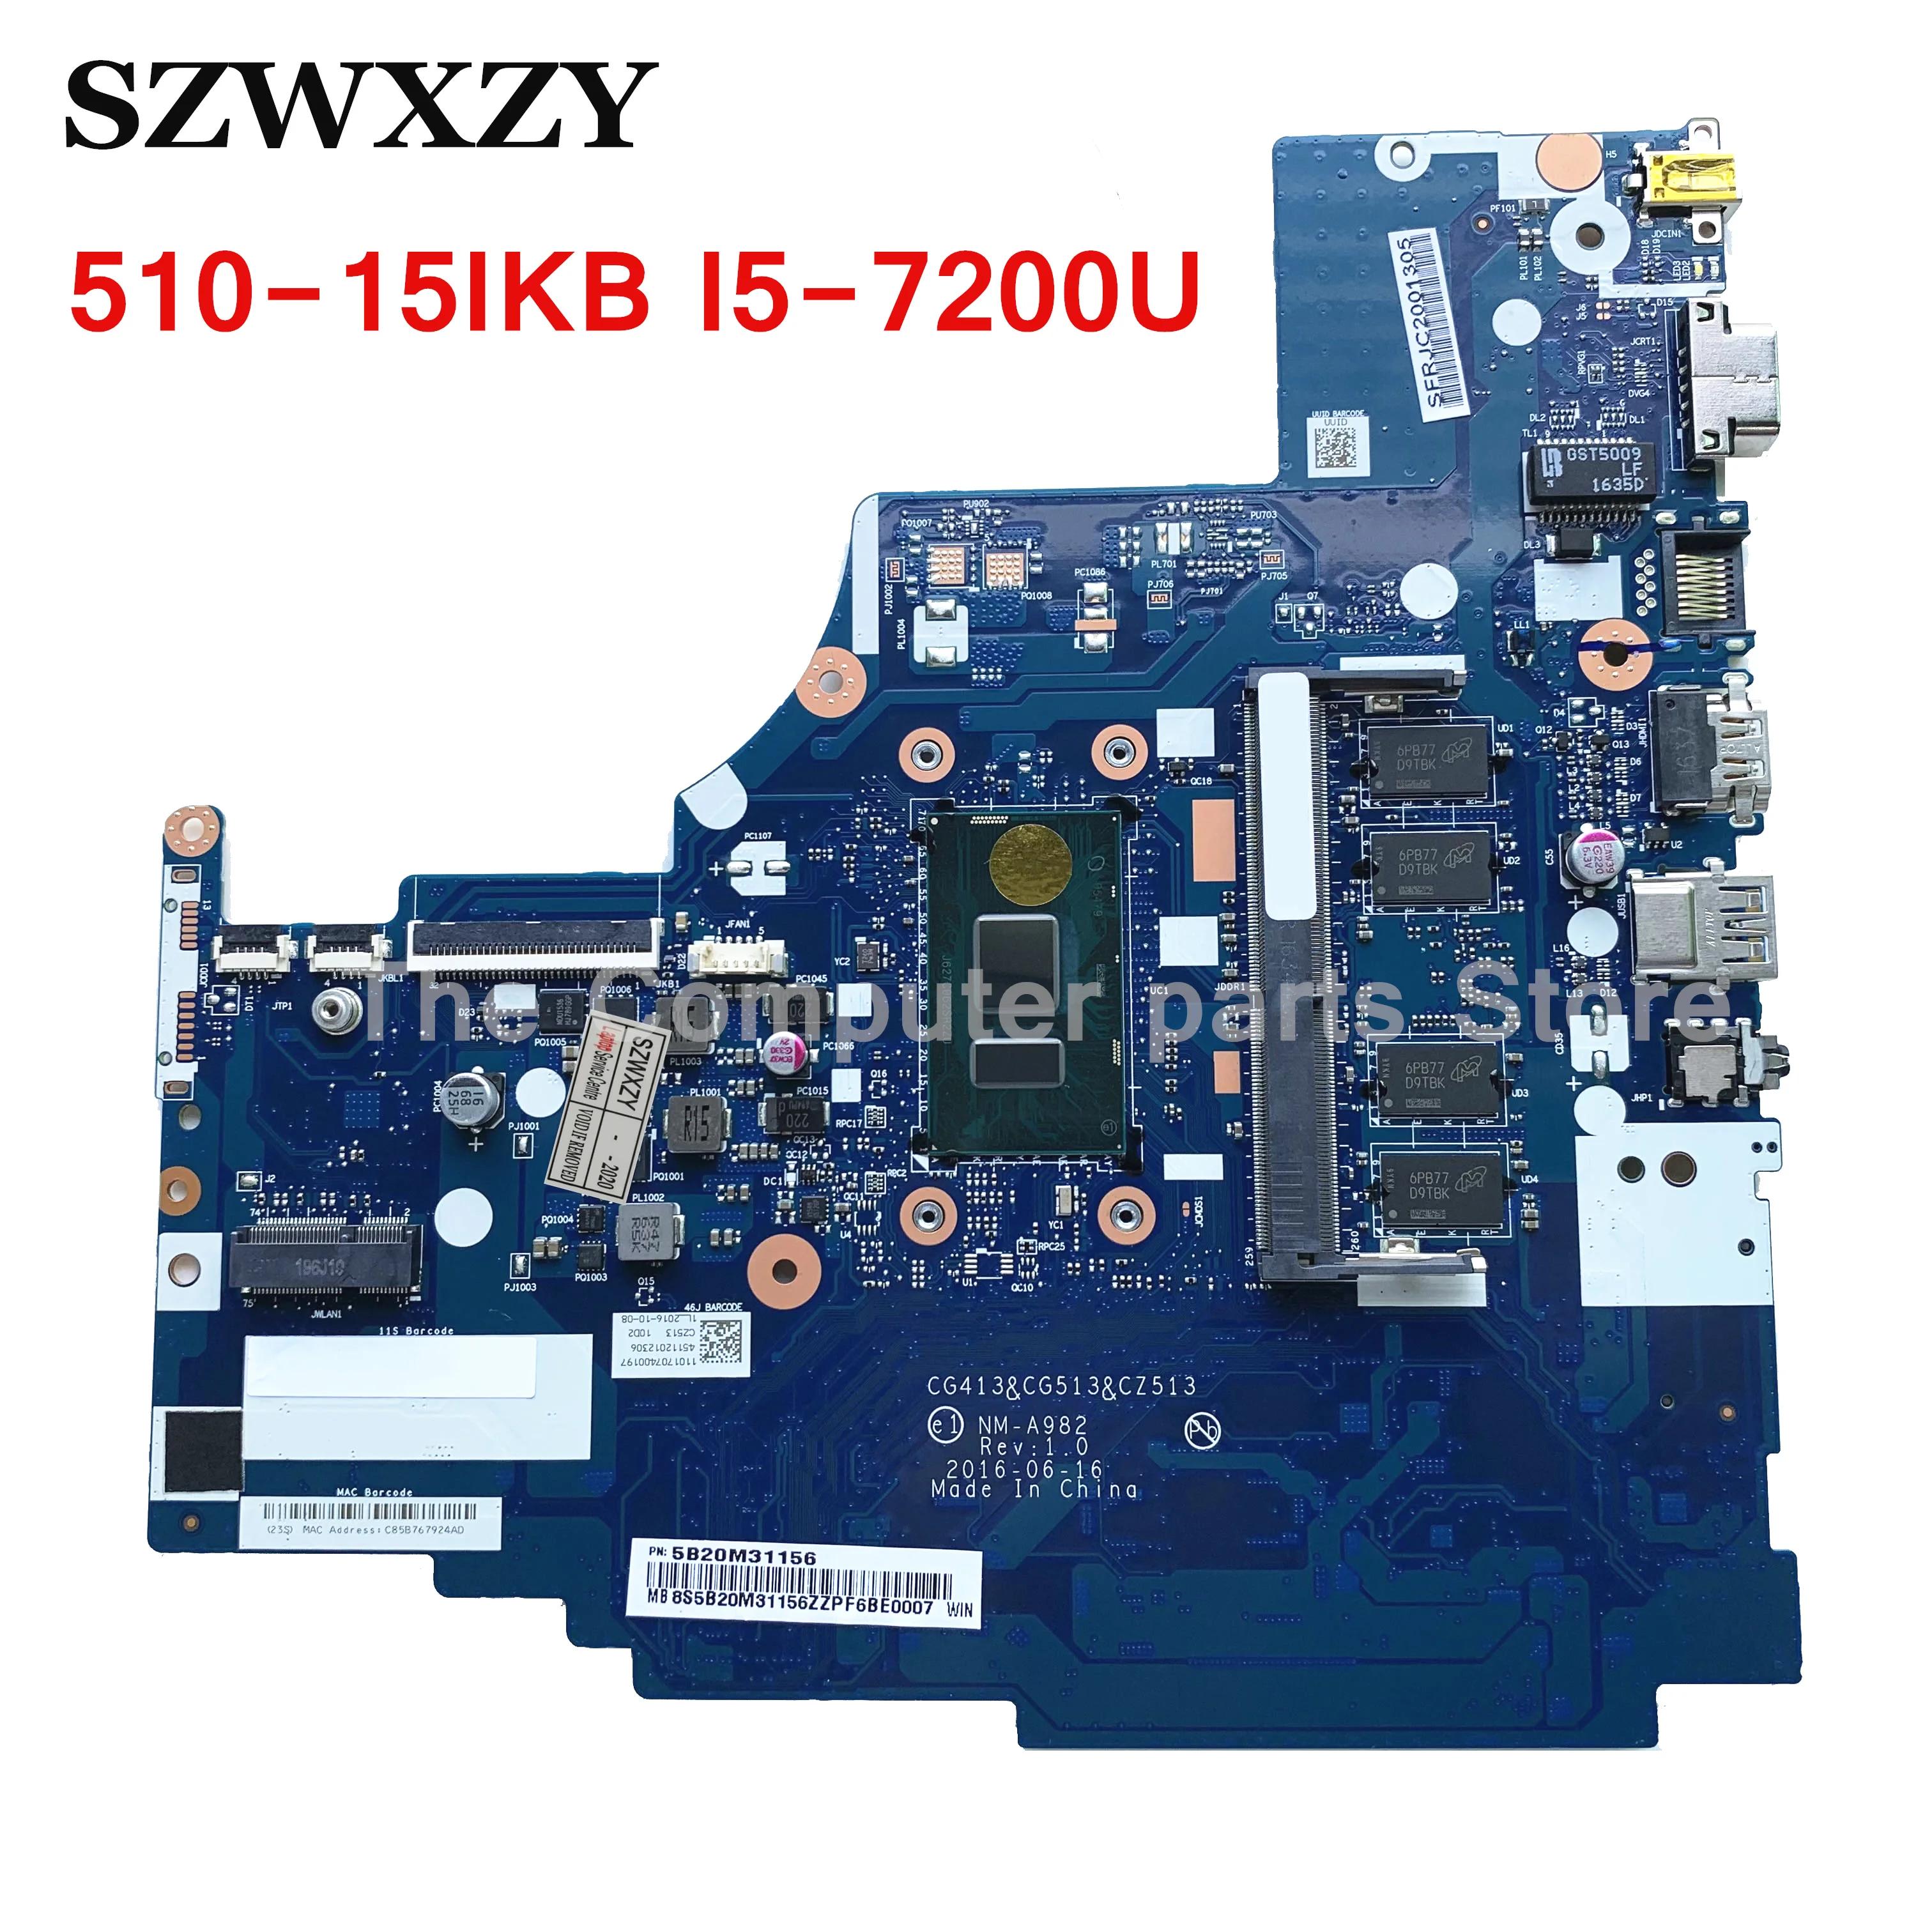  Ideapad 510-15IKB Ʈ   FRU 5B20M31156 NM-A982 CPU 4GB RAM I5-7200U